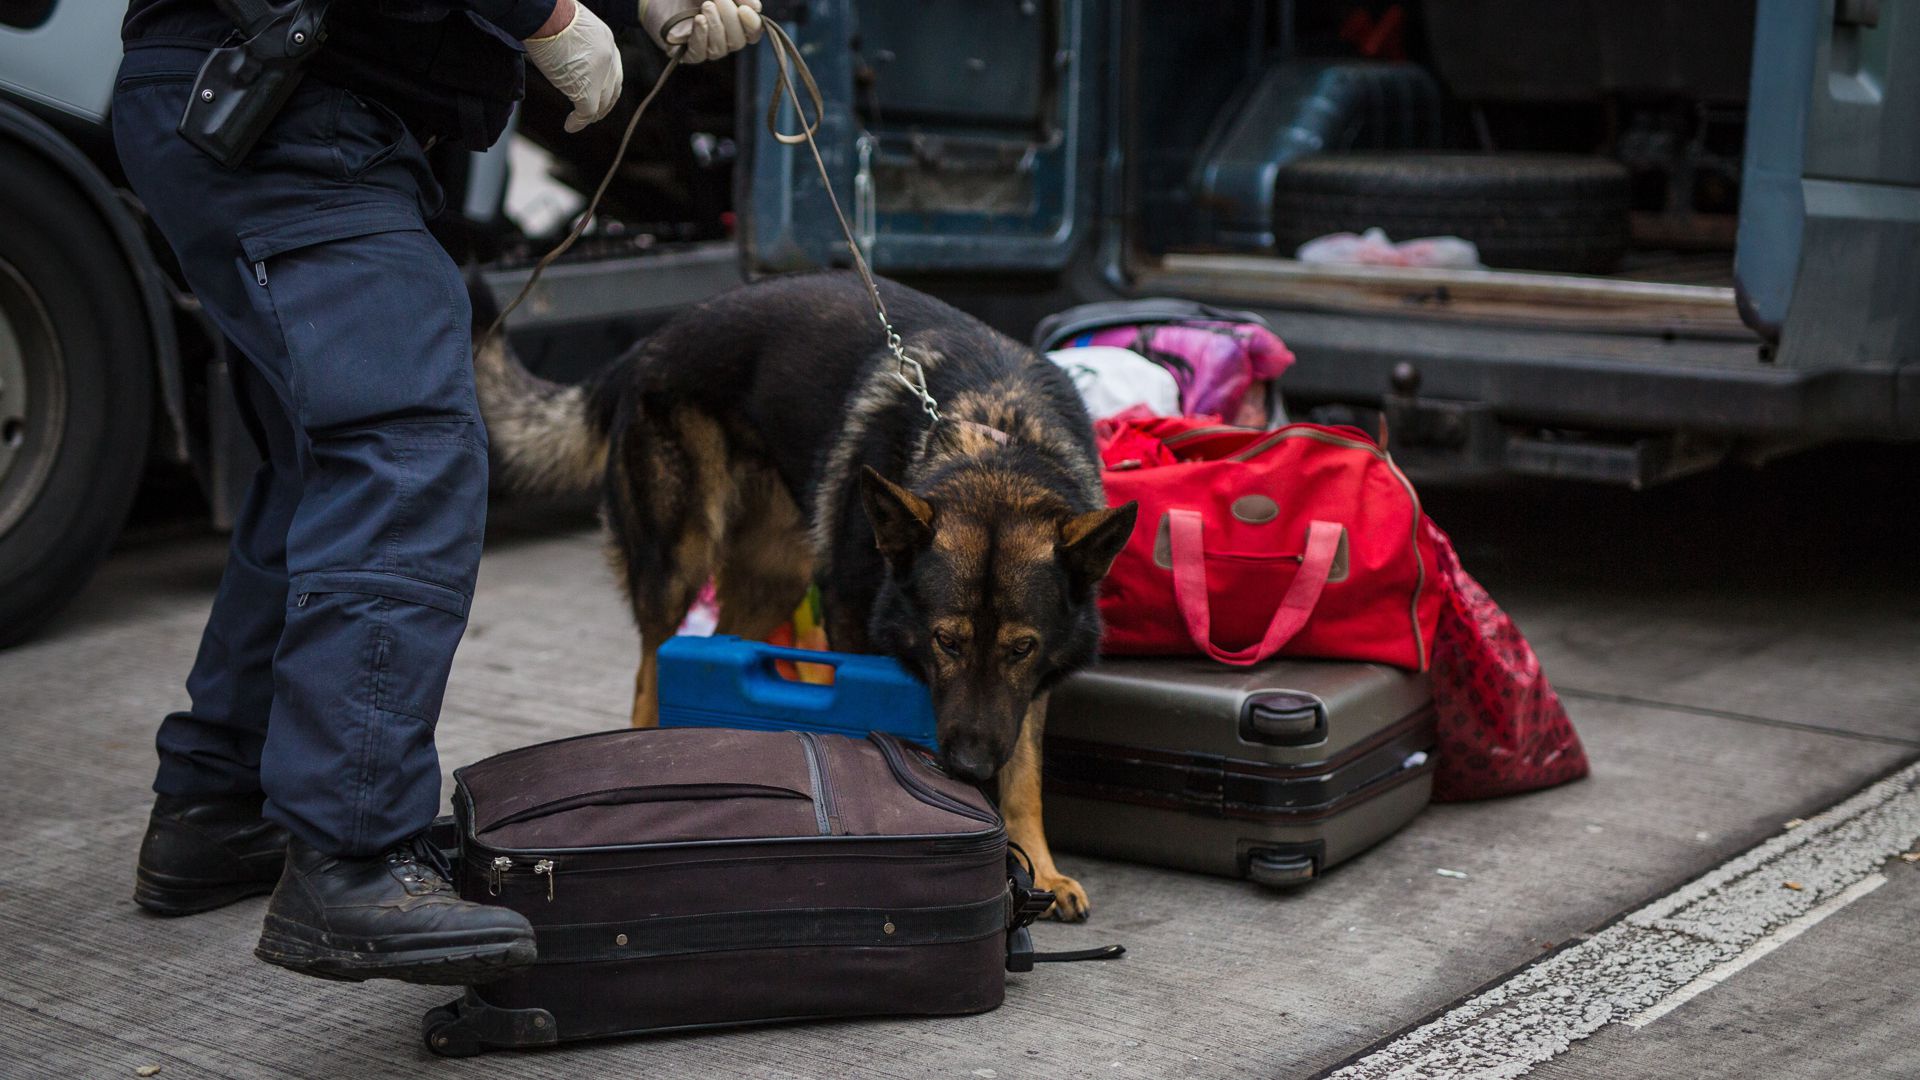 Ein Rauschgiftspürhund der Polizei schnüffelt am Gepäck aus einem Kleintransporter. Diensthundeführer erhalten jetzt vom Land einen Inflationsausgleich.